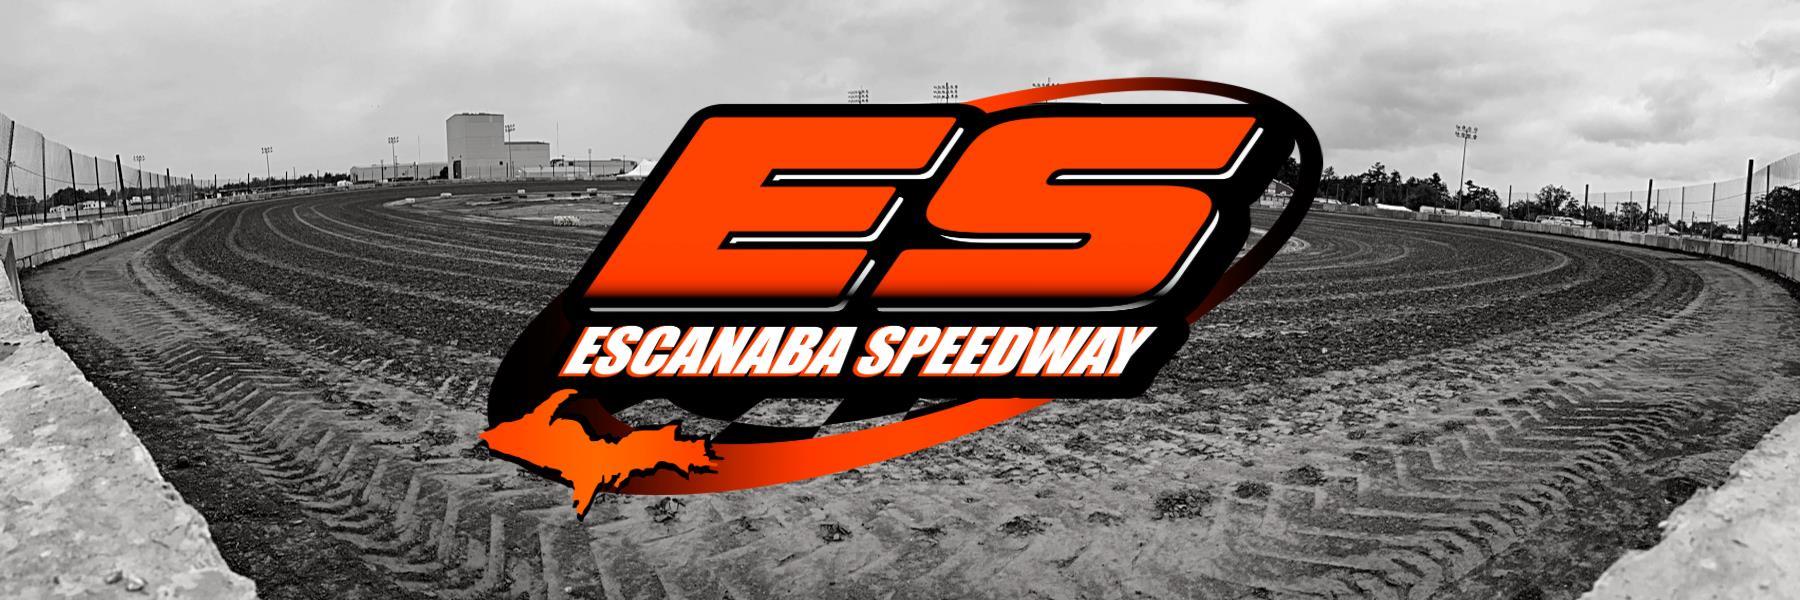 8/28/2021 - Escanaba Speedway